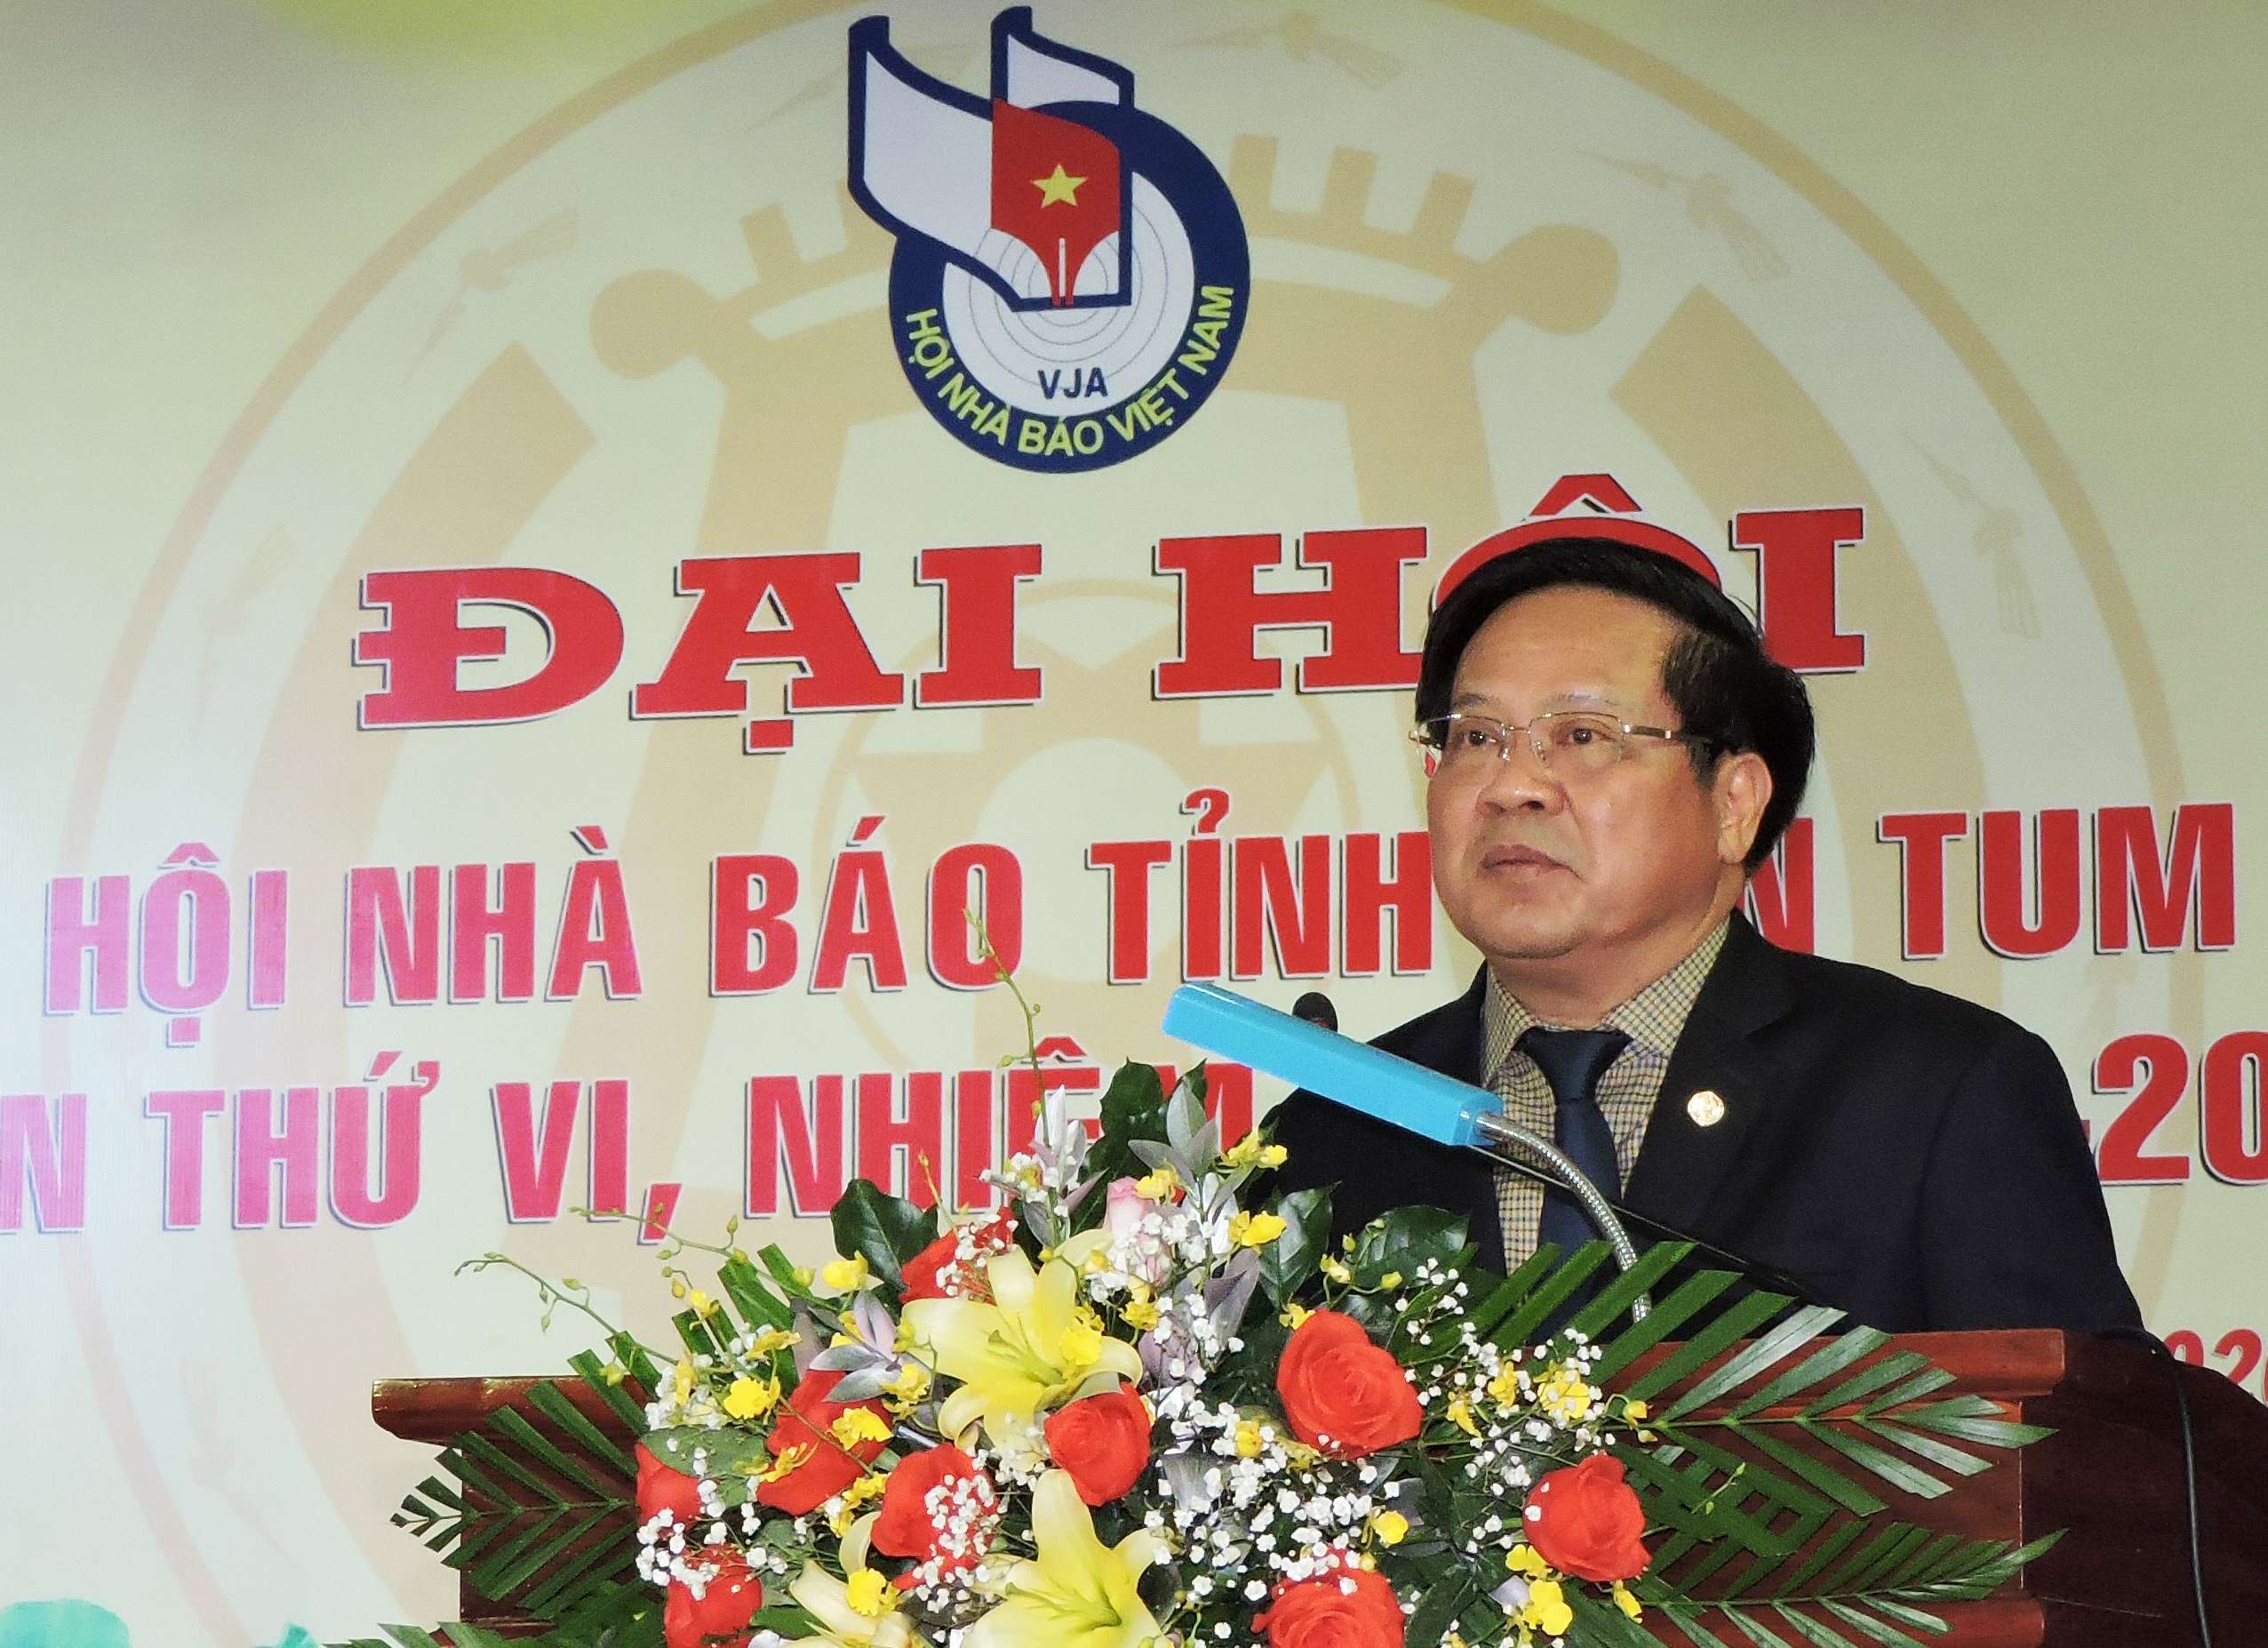 Đồng sức, đồng lòng, quyết tâm xây dựng tỉnh Kon Tum ngày càng phát triển